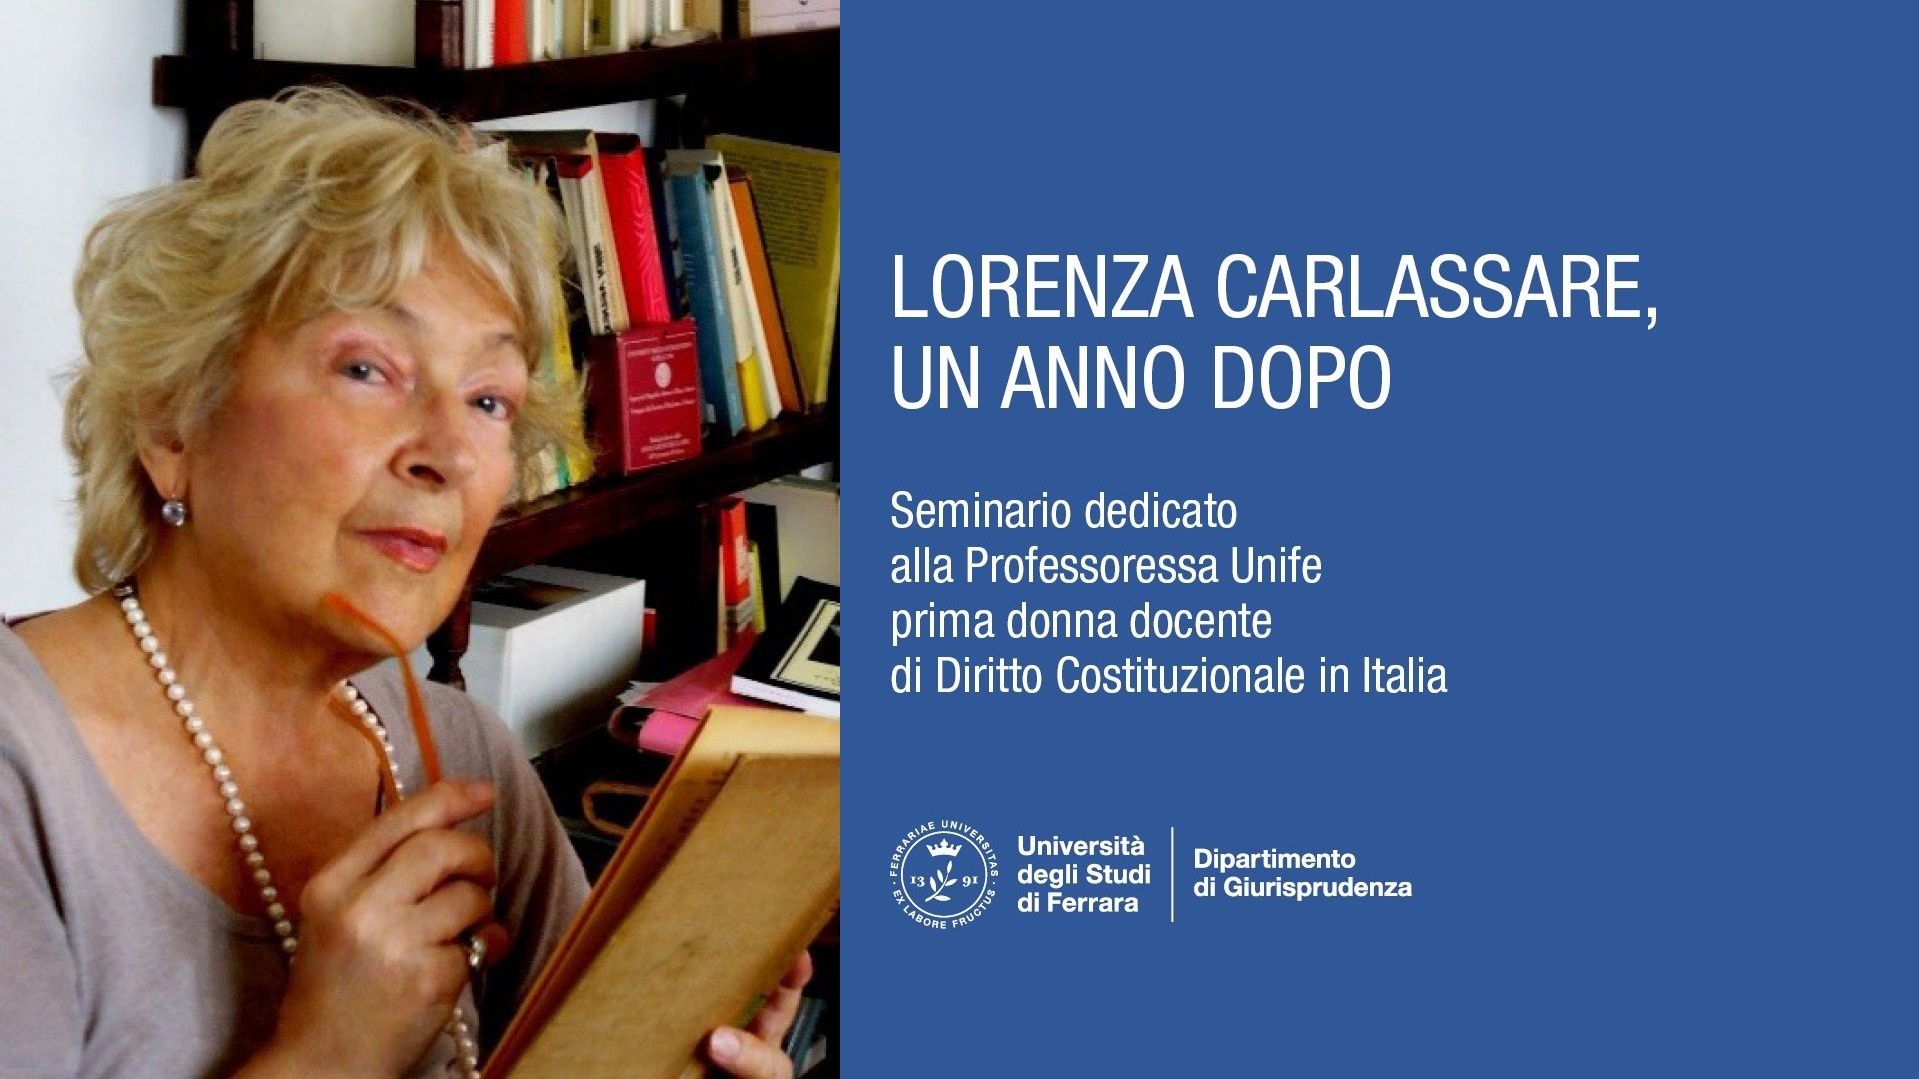 Lorenza Carlassare, un anno dopo. Evento sulla docente Unife prima costituzionalista donna in Italia